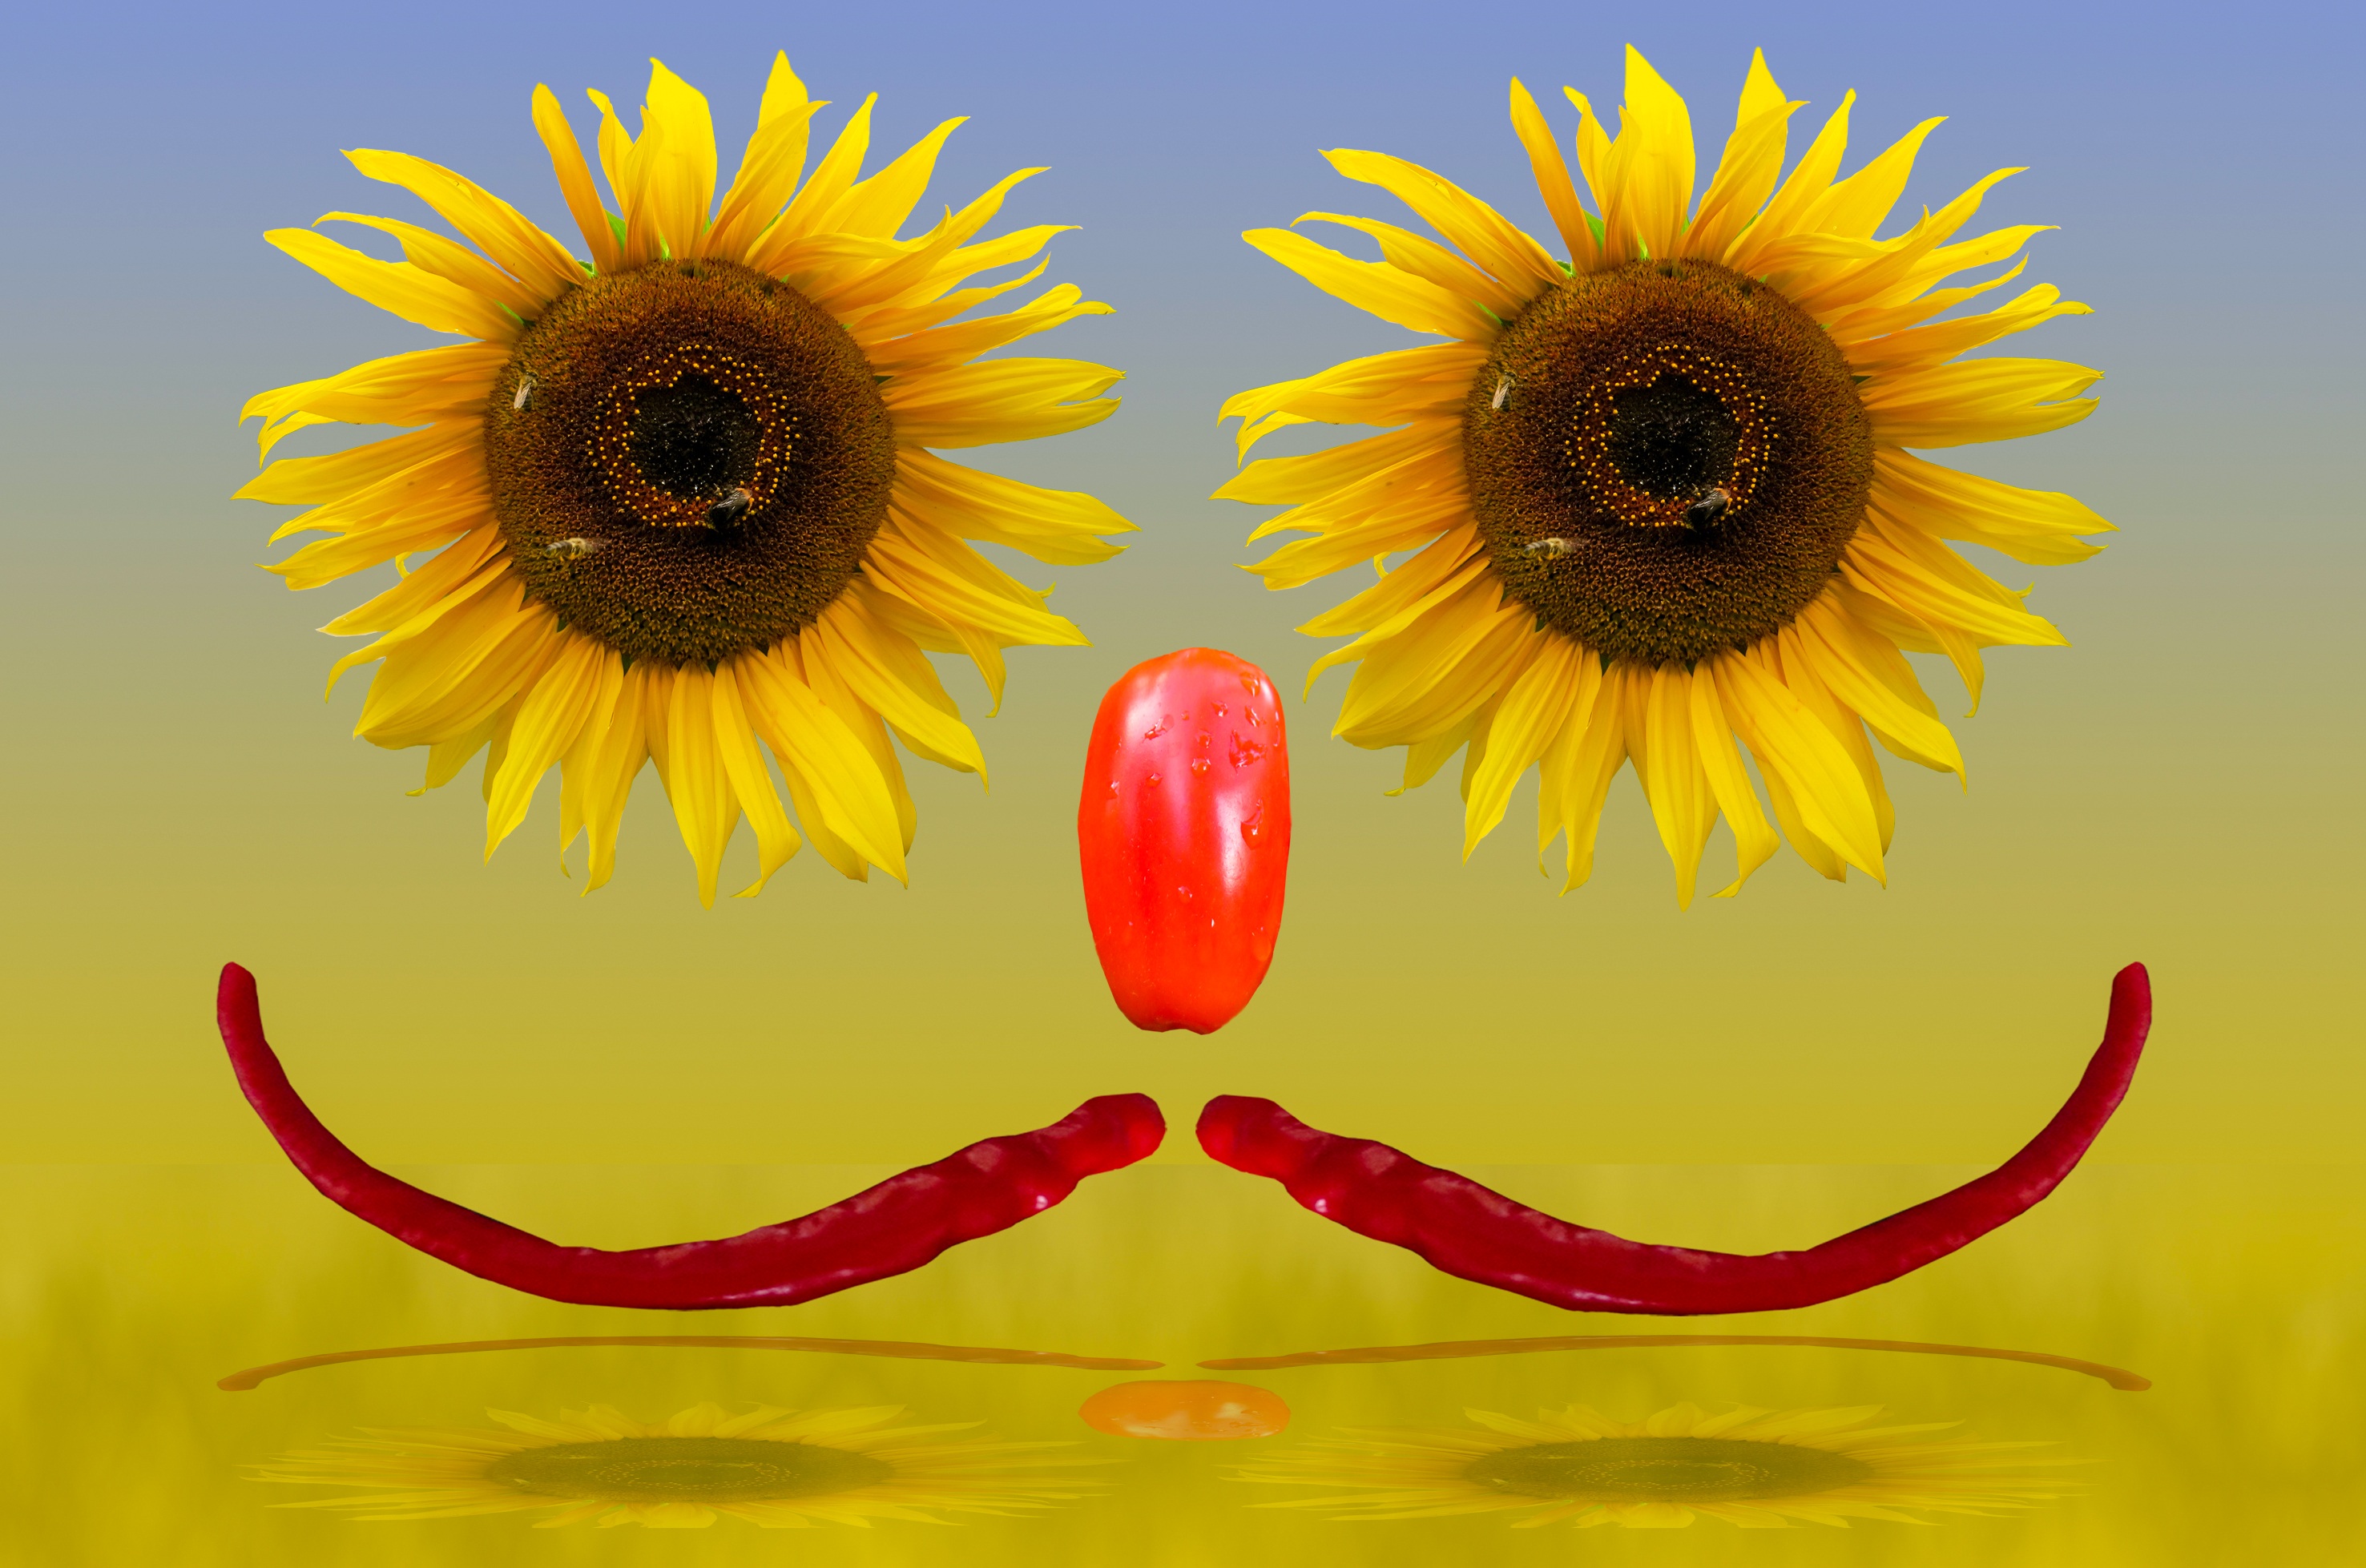 Blooming sunflower photo